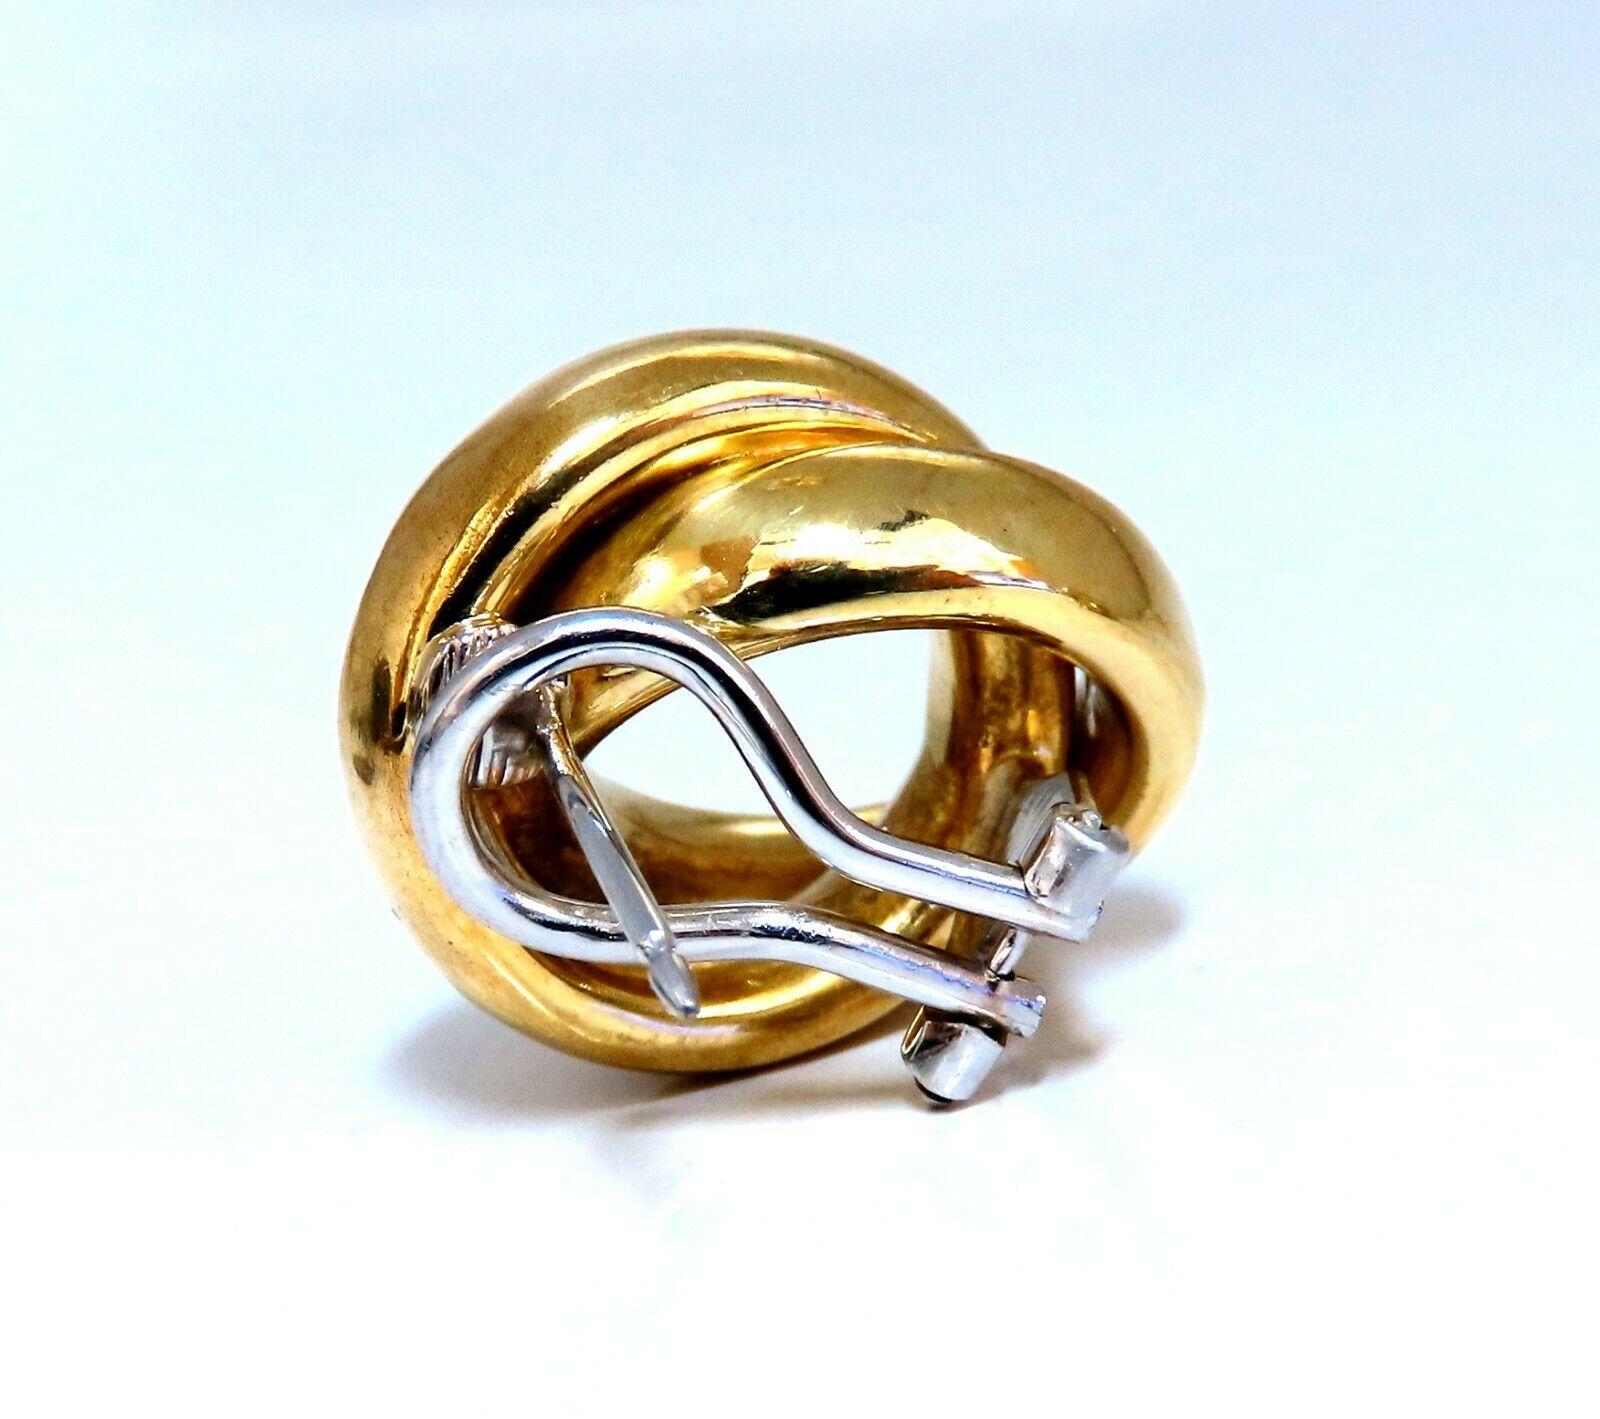 Kreisförmige Looping Clip-Ohrringe

Abmessungen: 

21 x 18mm

Tiefe: 9 mm

Bequemer Omega-Clip

14 Gramm / 18kt. Gelbgold

Ohrringe sind wunderschön gemacht